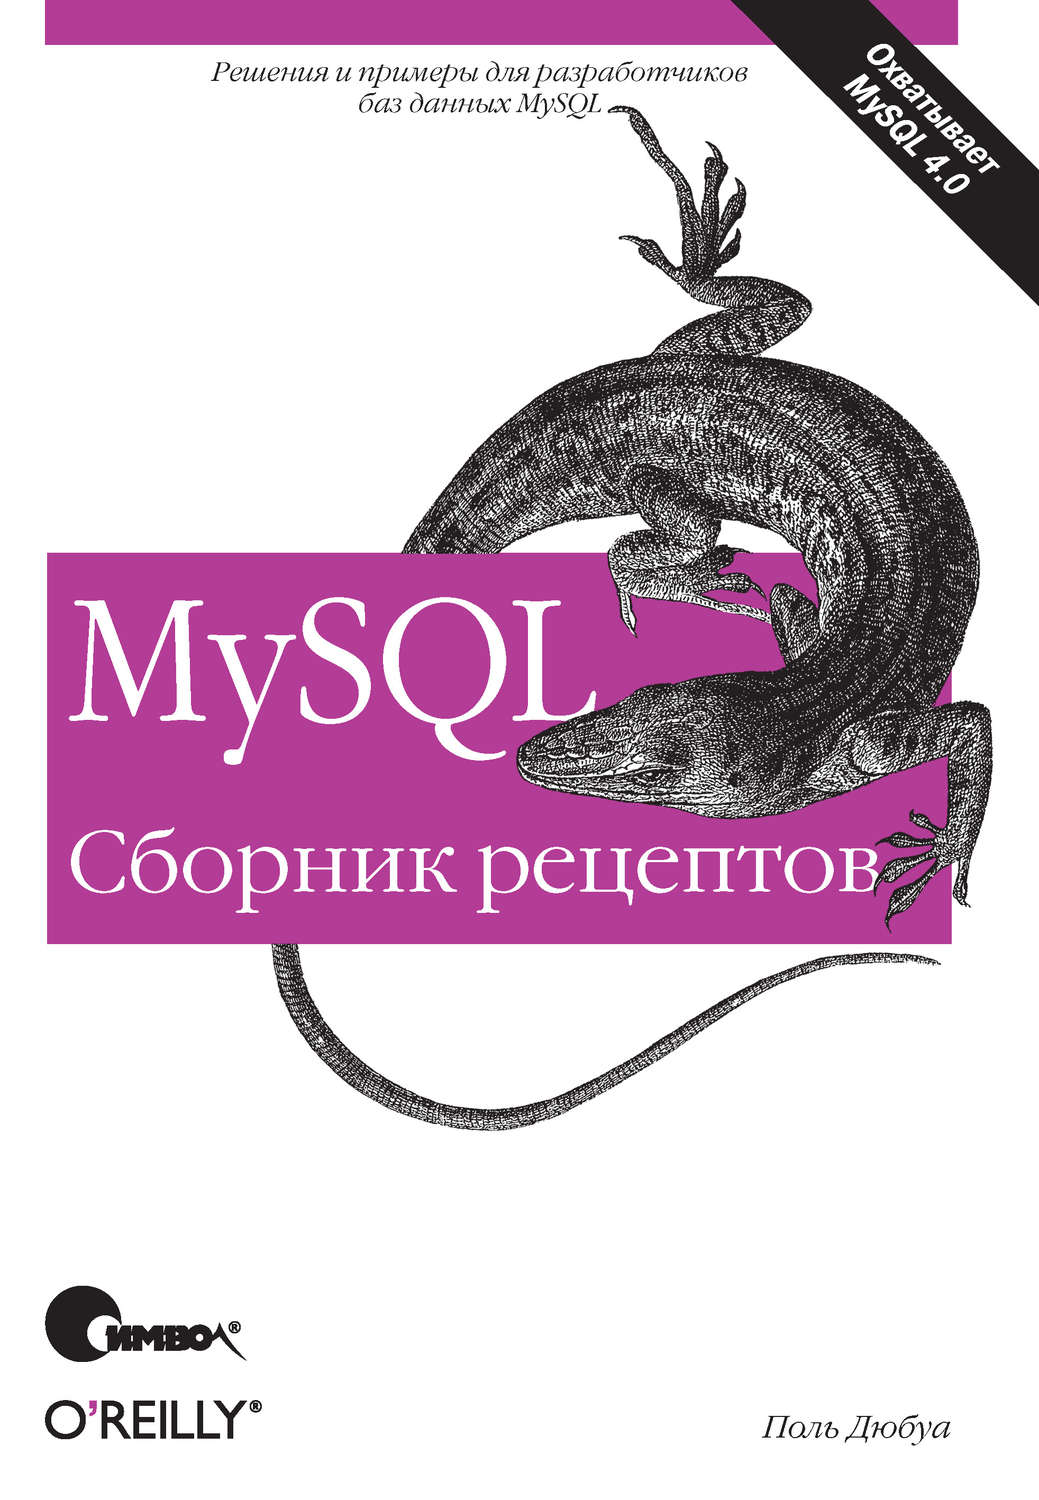 6 книг по MySQL для старта работы и погружения в технологию - 4